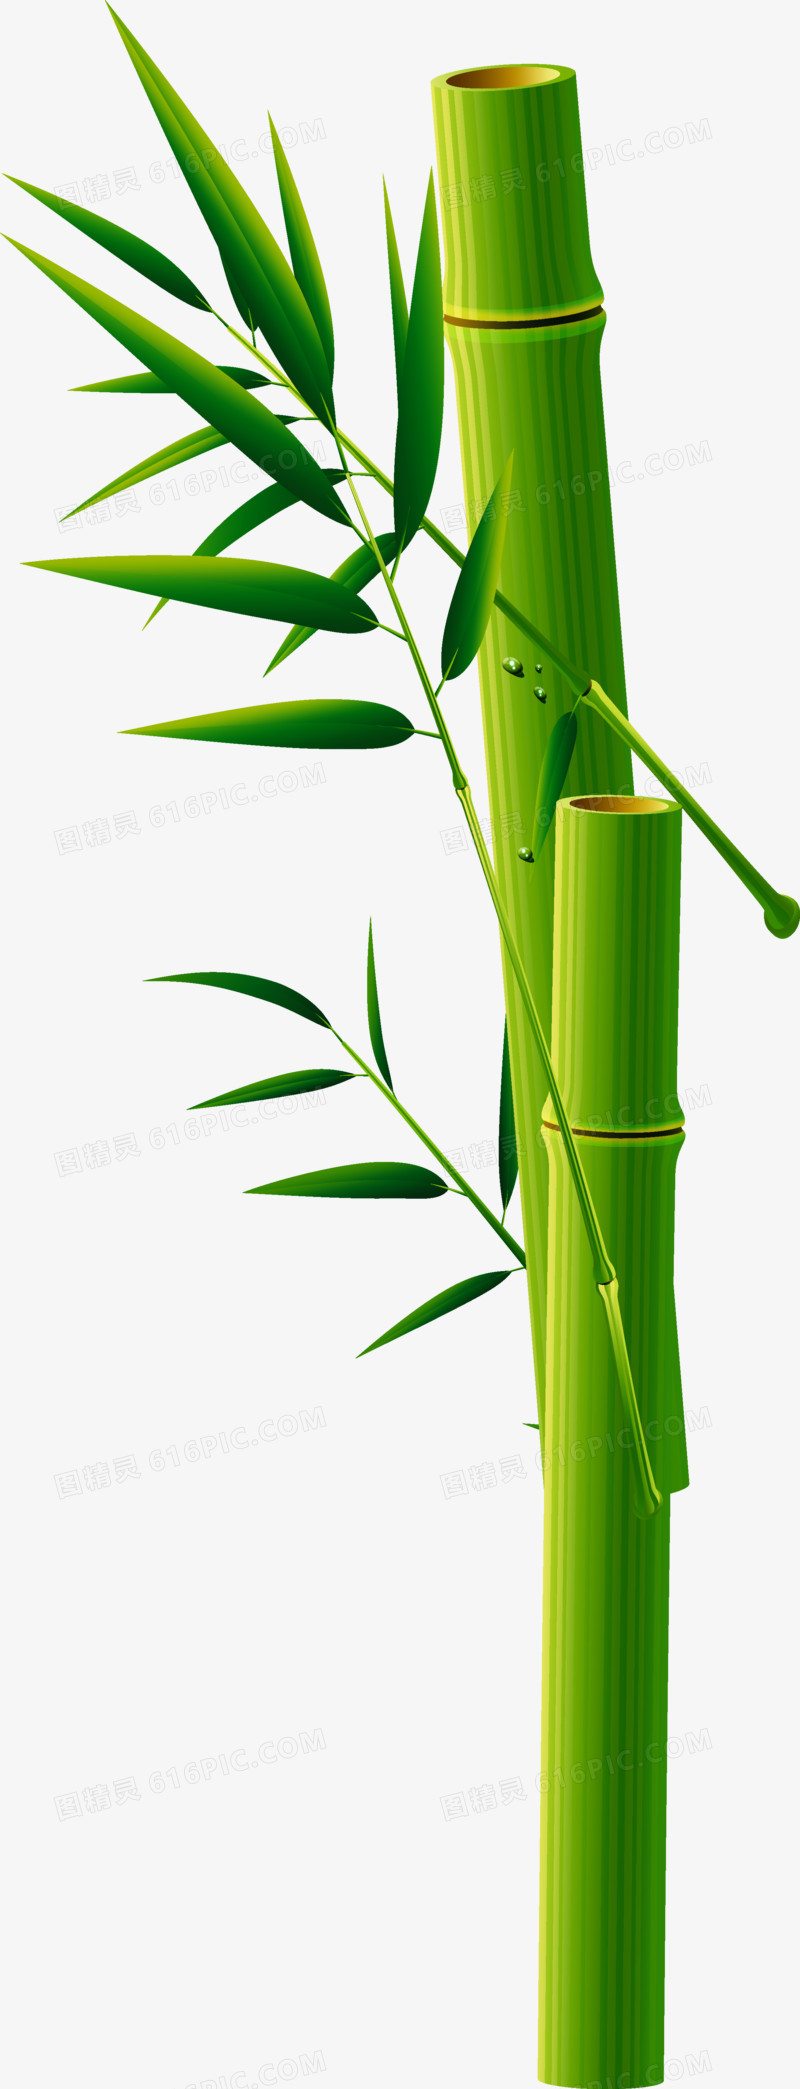 本设计作品为绿色竹子,格式为png,尺寸为2244x5859,下载后直接使用